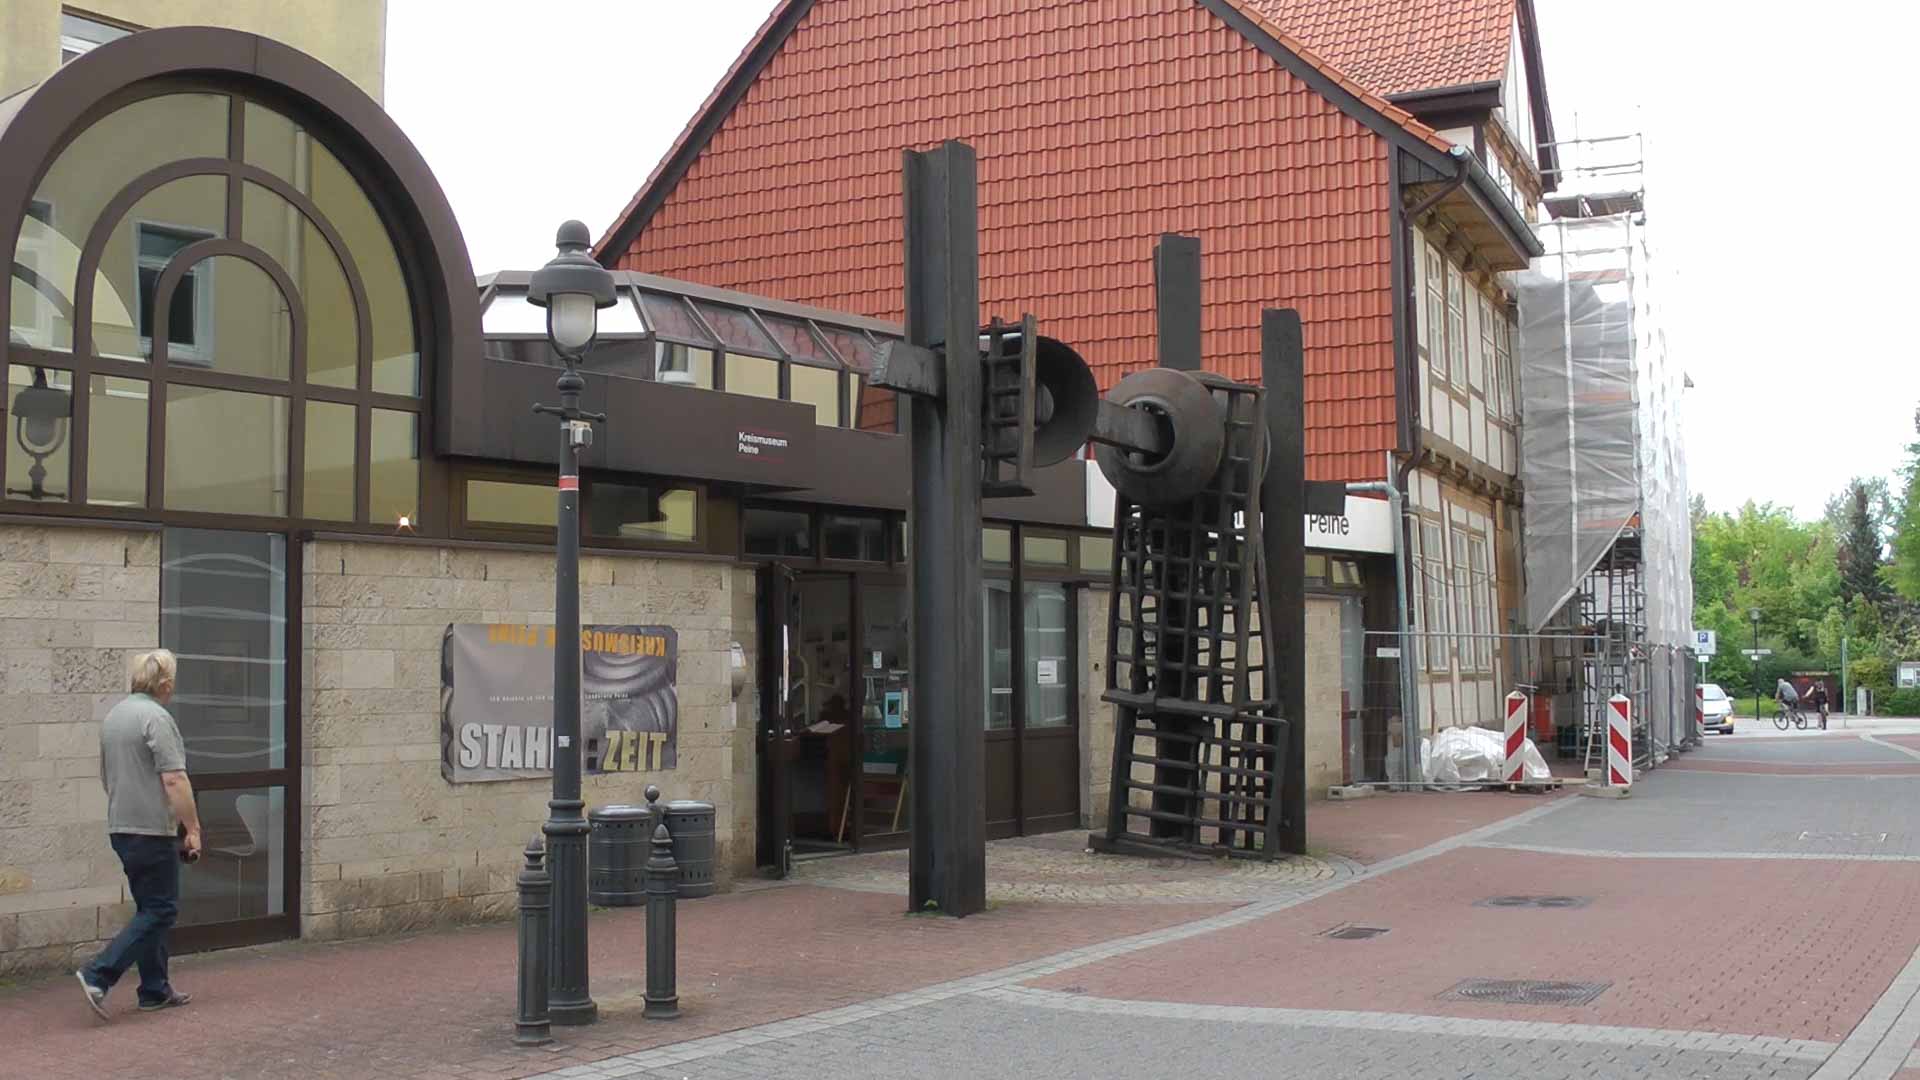 Kreismuseum Peine